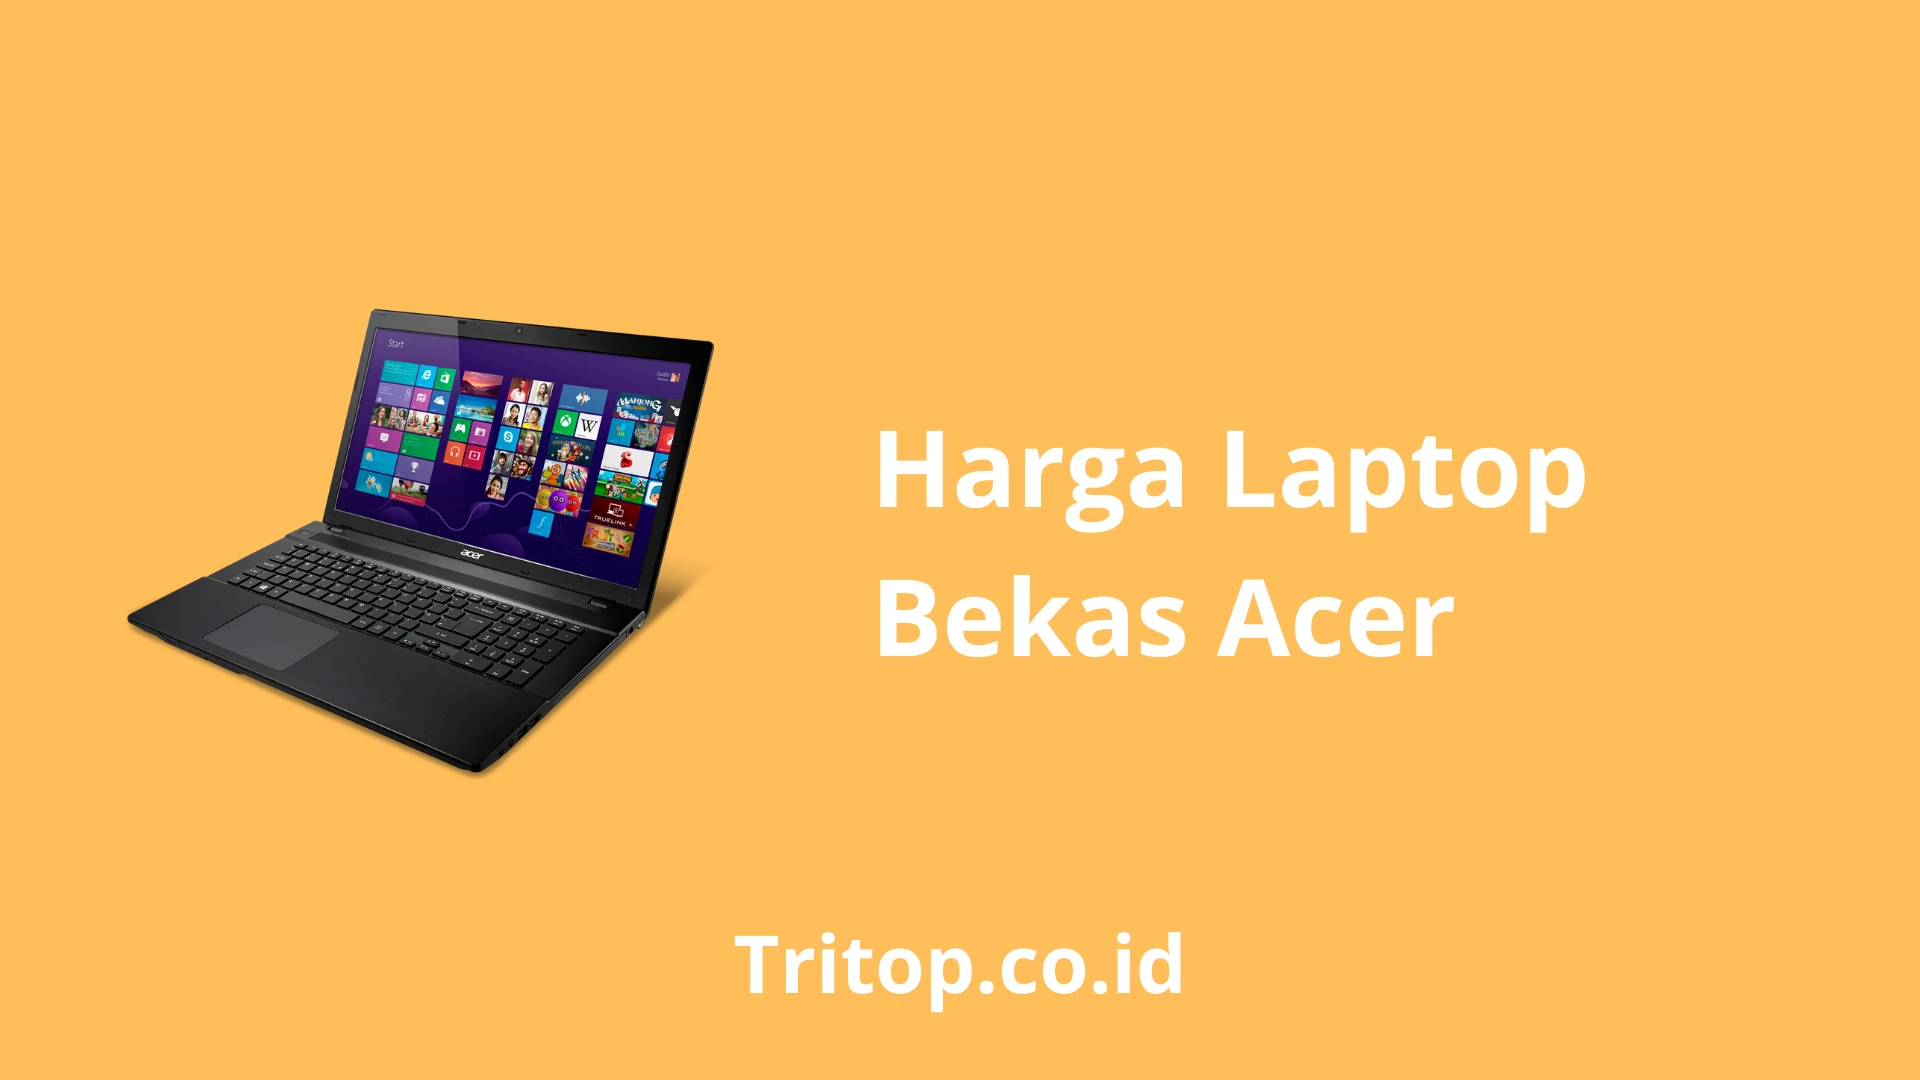 Harga Laptop Bekas Acer Tritop.co.id